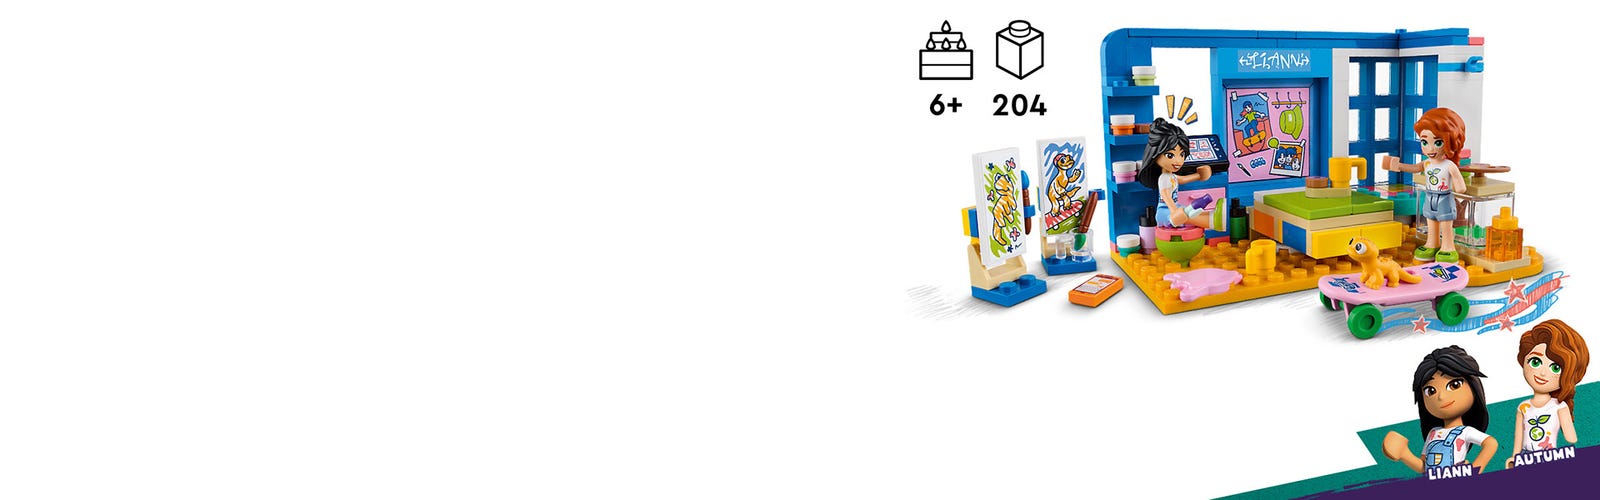 Friends - La chambre de Liann (41739) LEGO